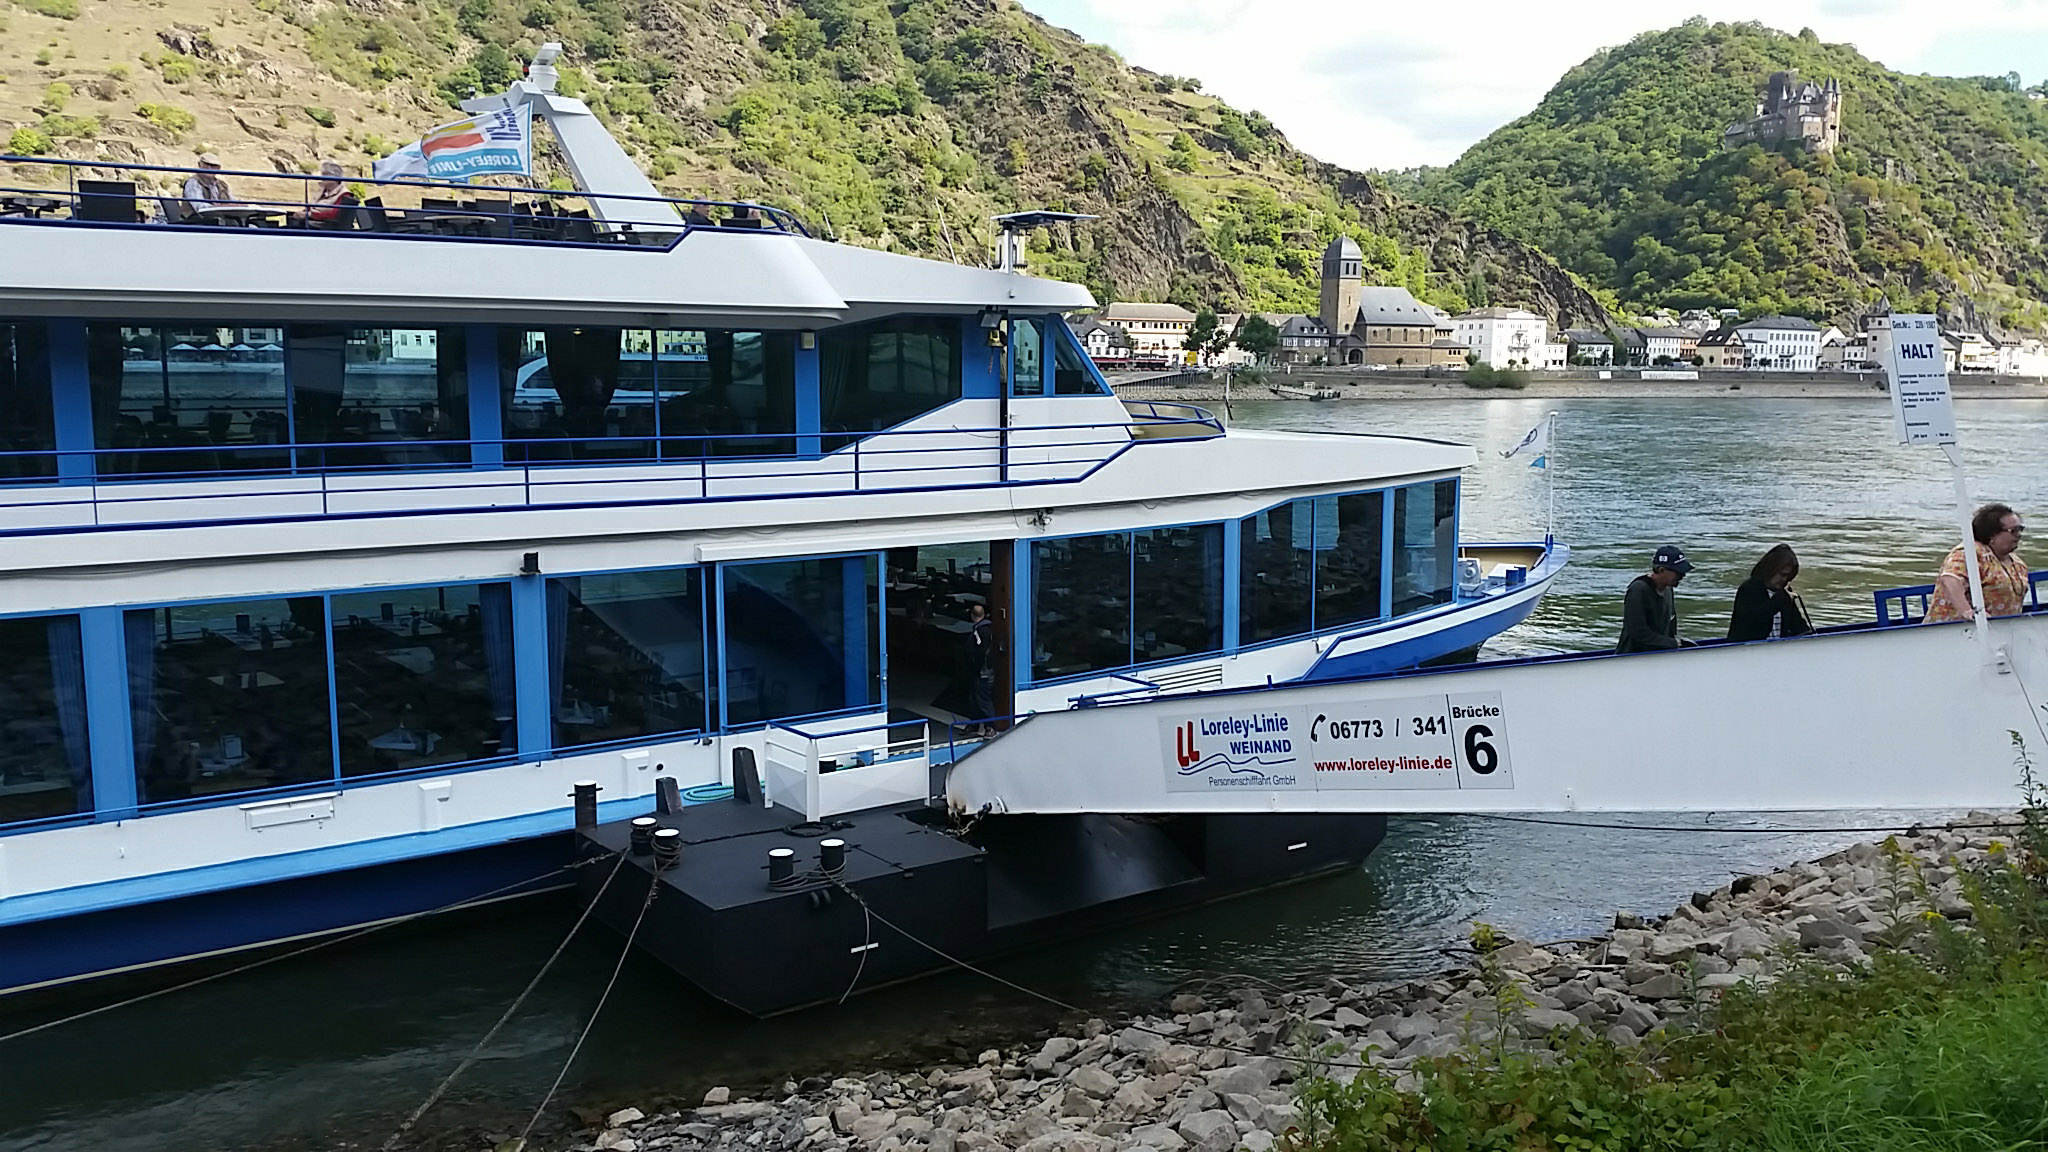 The Rhine Cruise